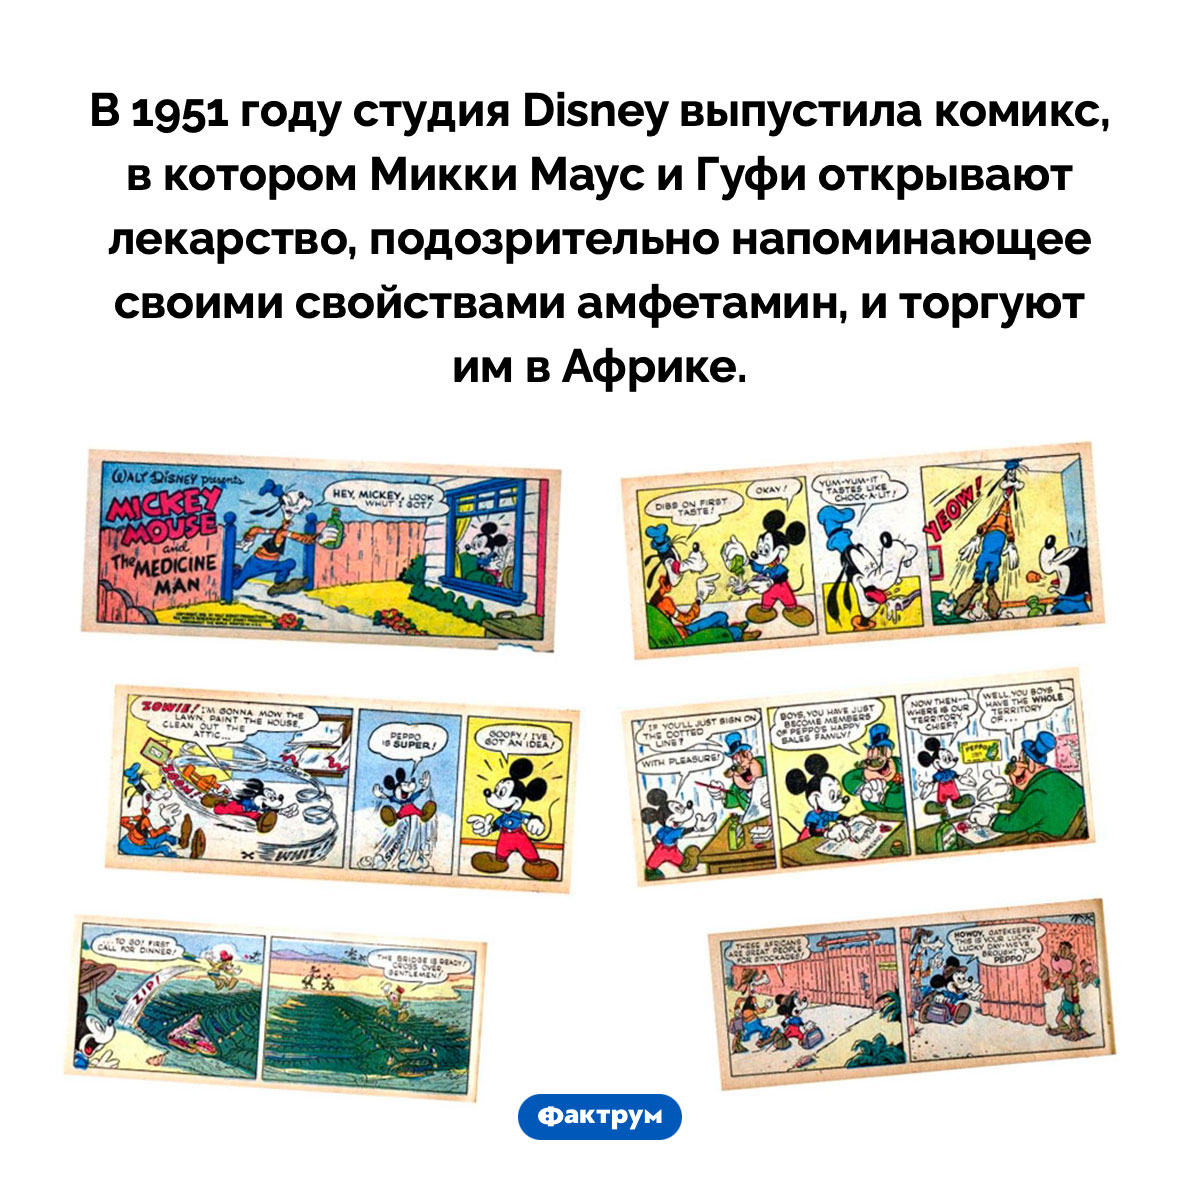 Мики Маус-наркоторговец. В 1951 году студия Disney выпустила комикс, в котором Микки Маус и Гуфи открывают лекарство, подозрительно напоминающее своими свойствами амфетамин, и торгуют им в Африке.